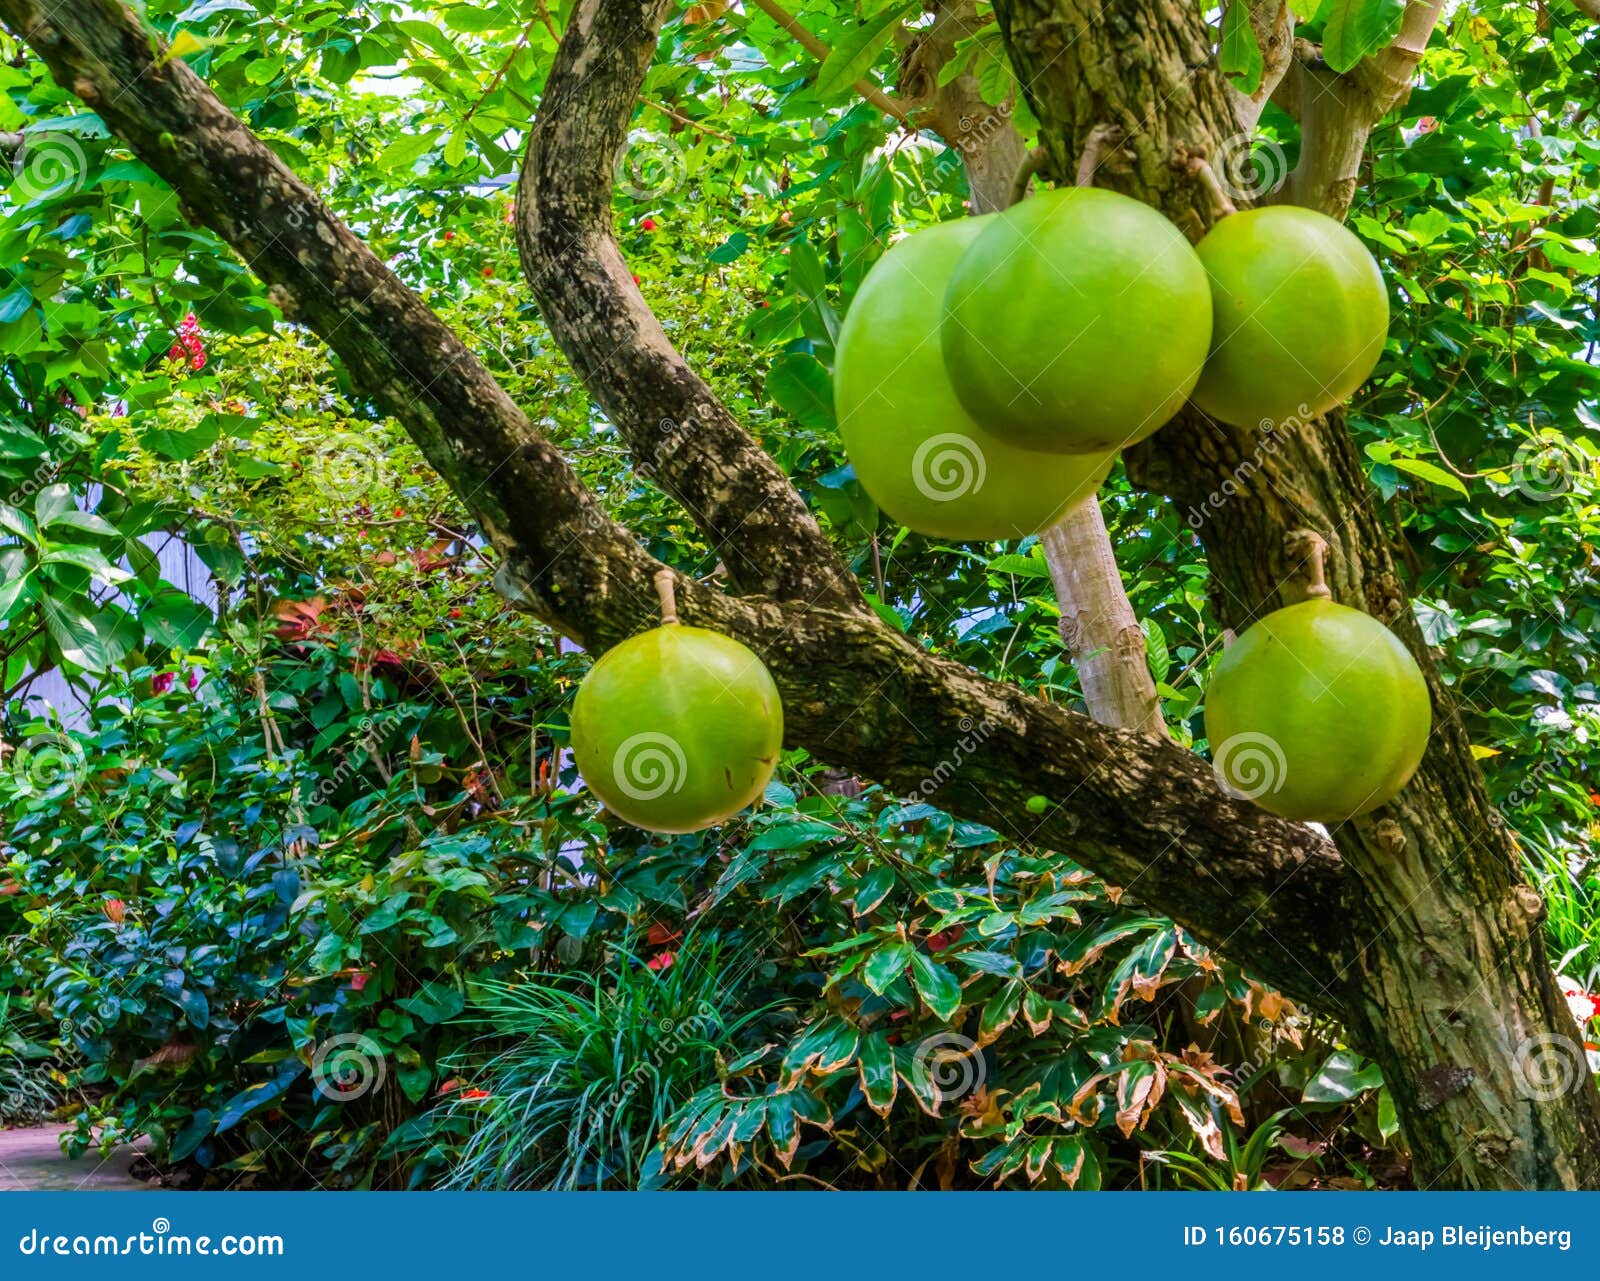 شجرة فلوريدا تحمل فاكهة اليقطين البرتقالية